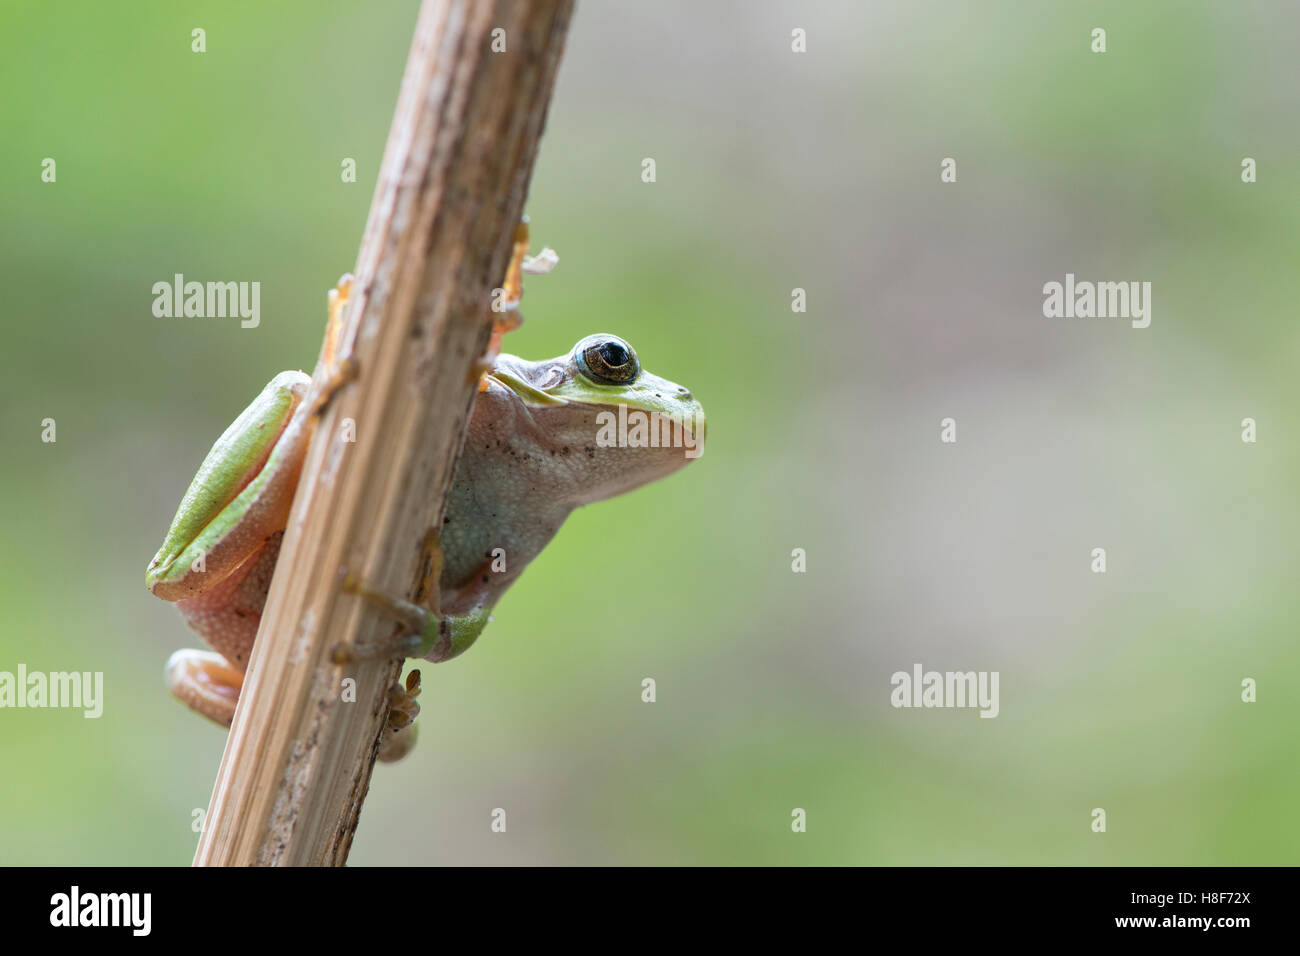 Tree frog (Hyla arborea) on stalk, Rhineland-Palatinate, Germany Stock Photo